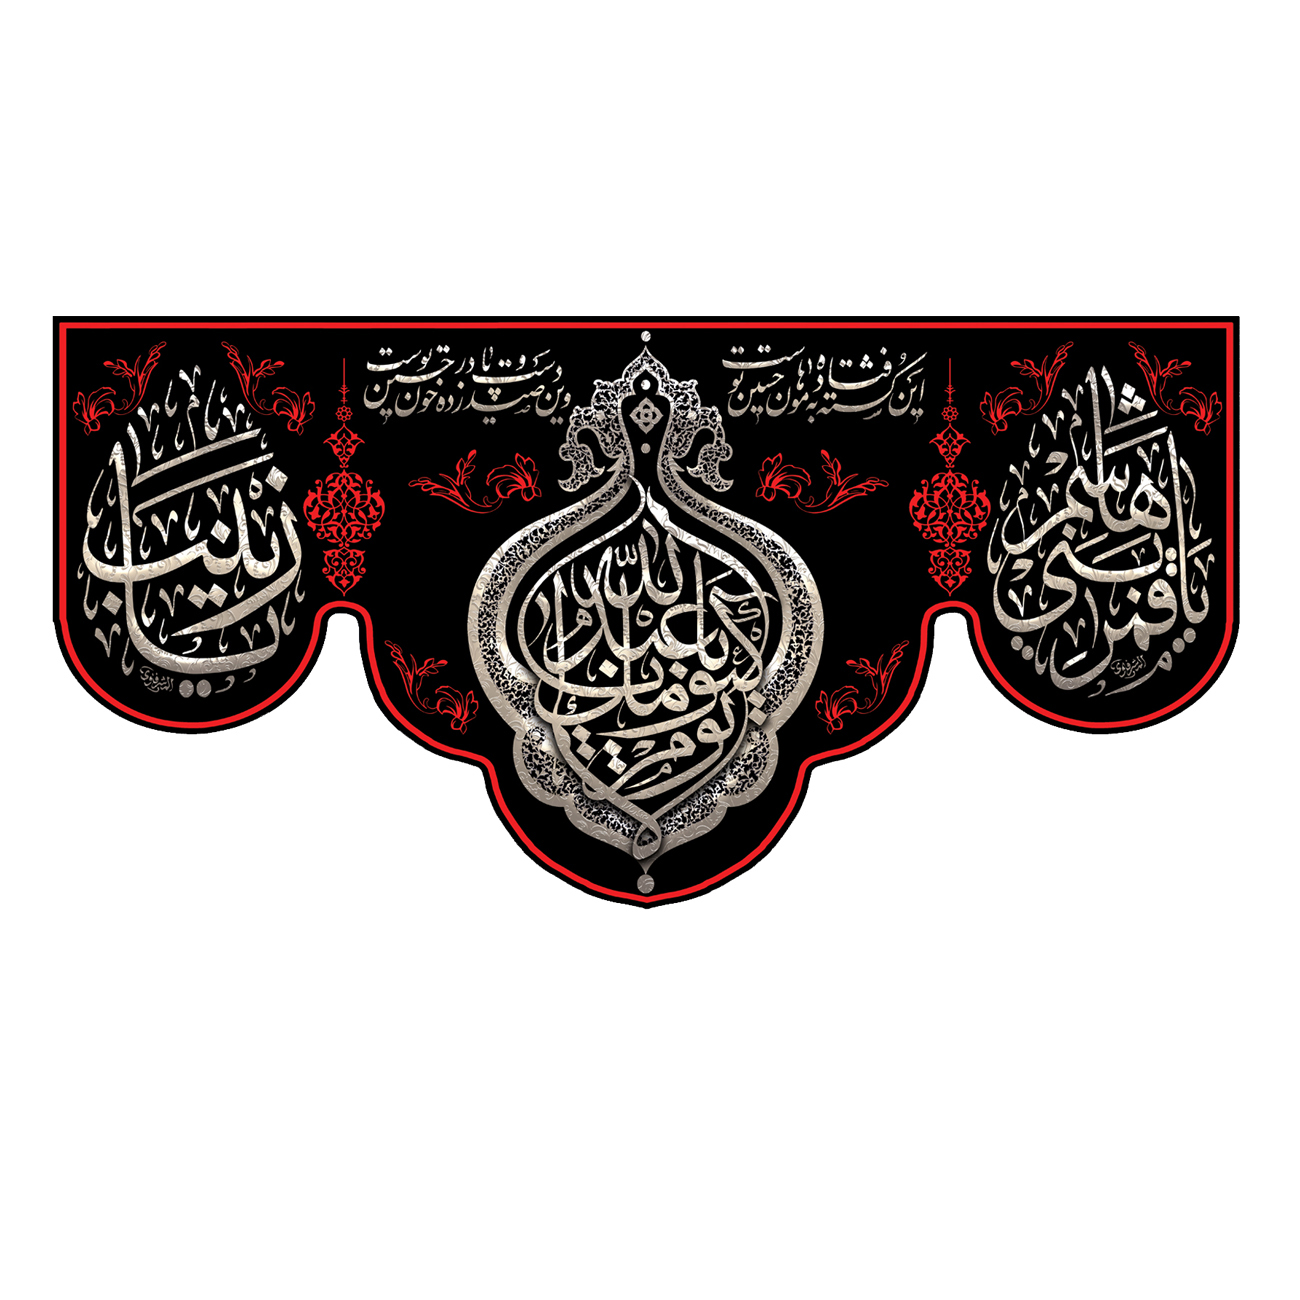 پرچم مدل لا یوم کیومک یا ابا عبد الله کد 500037-14070